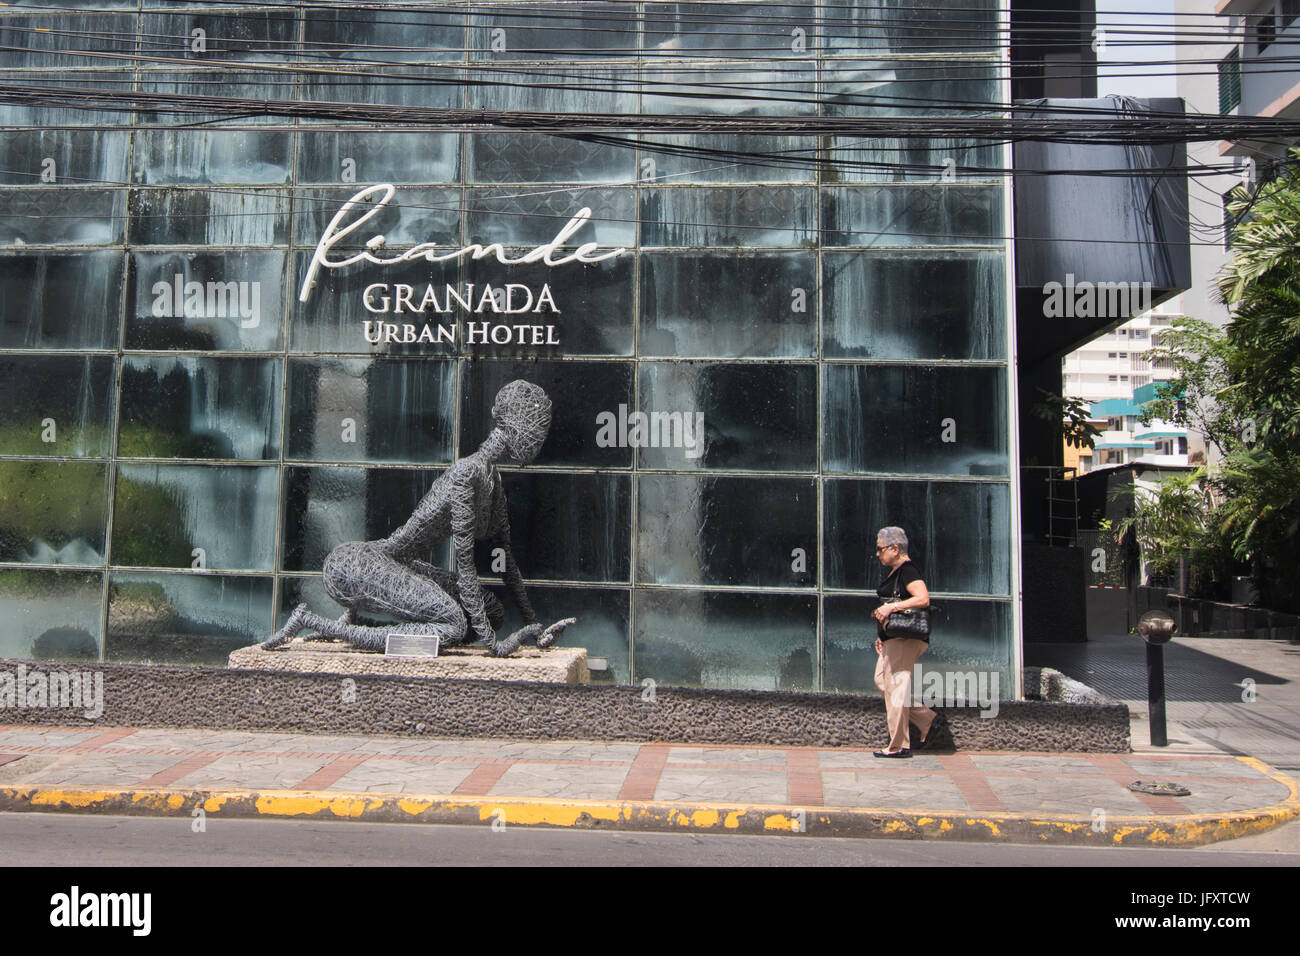 Hotel Granada vista frontale con artwork Foto Stock